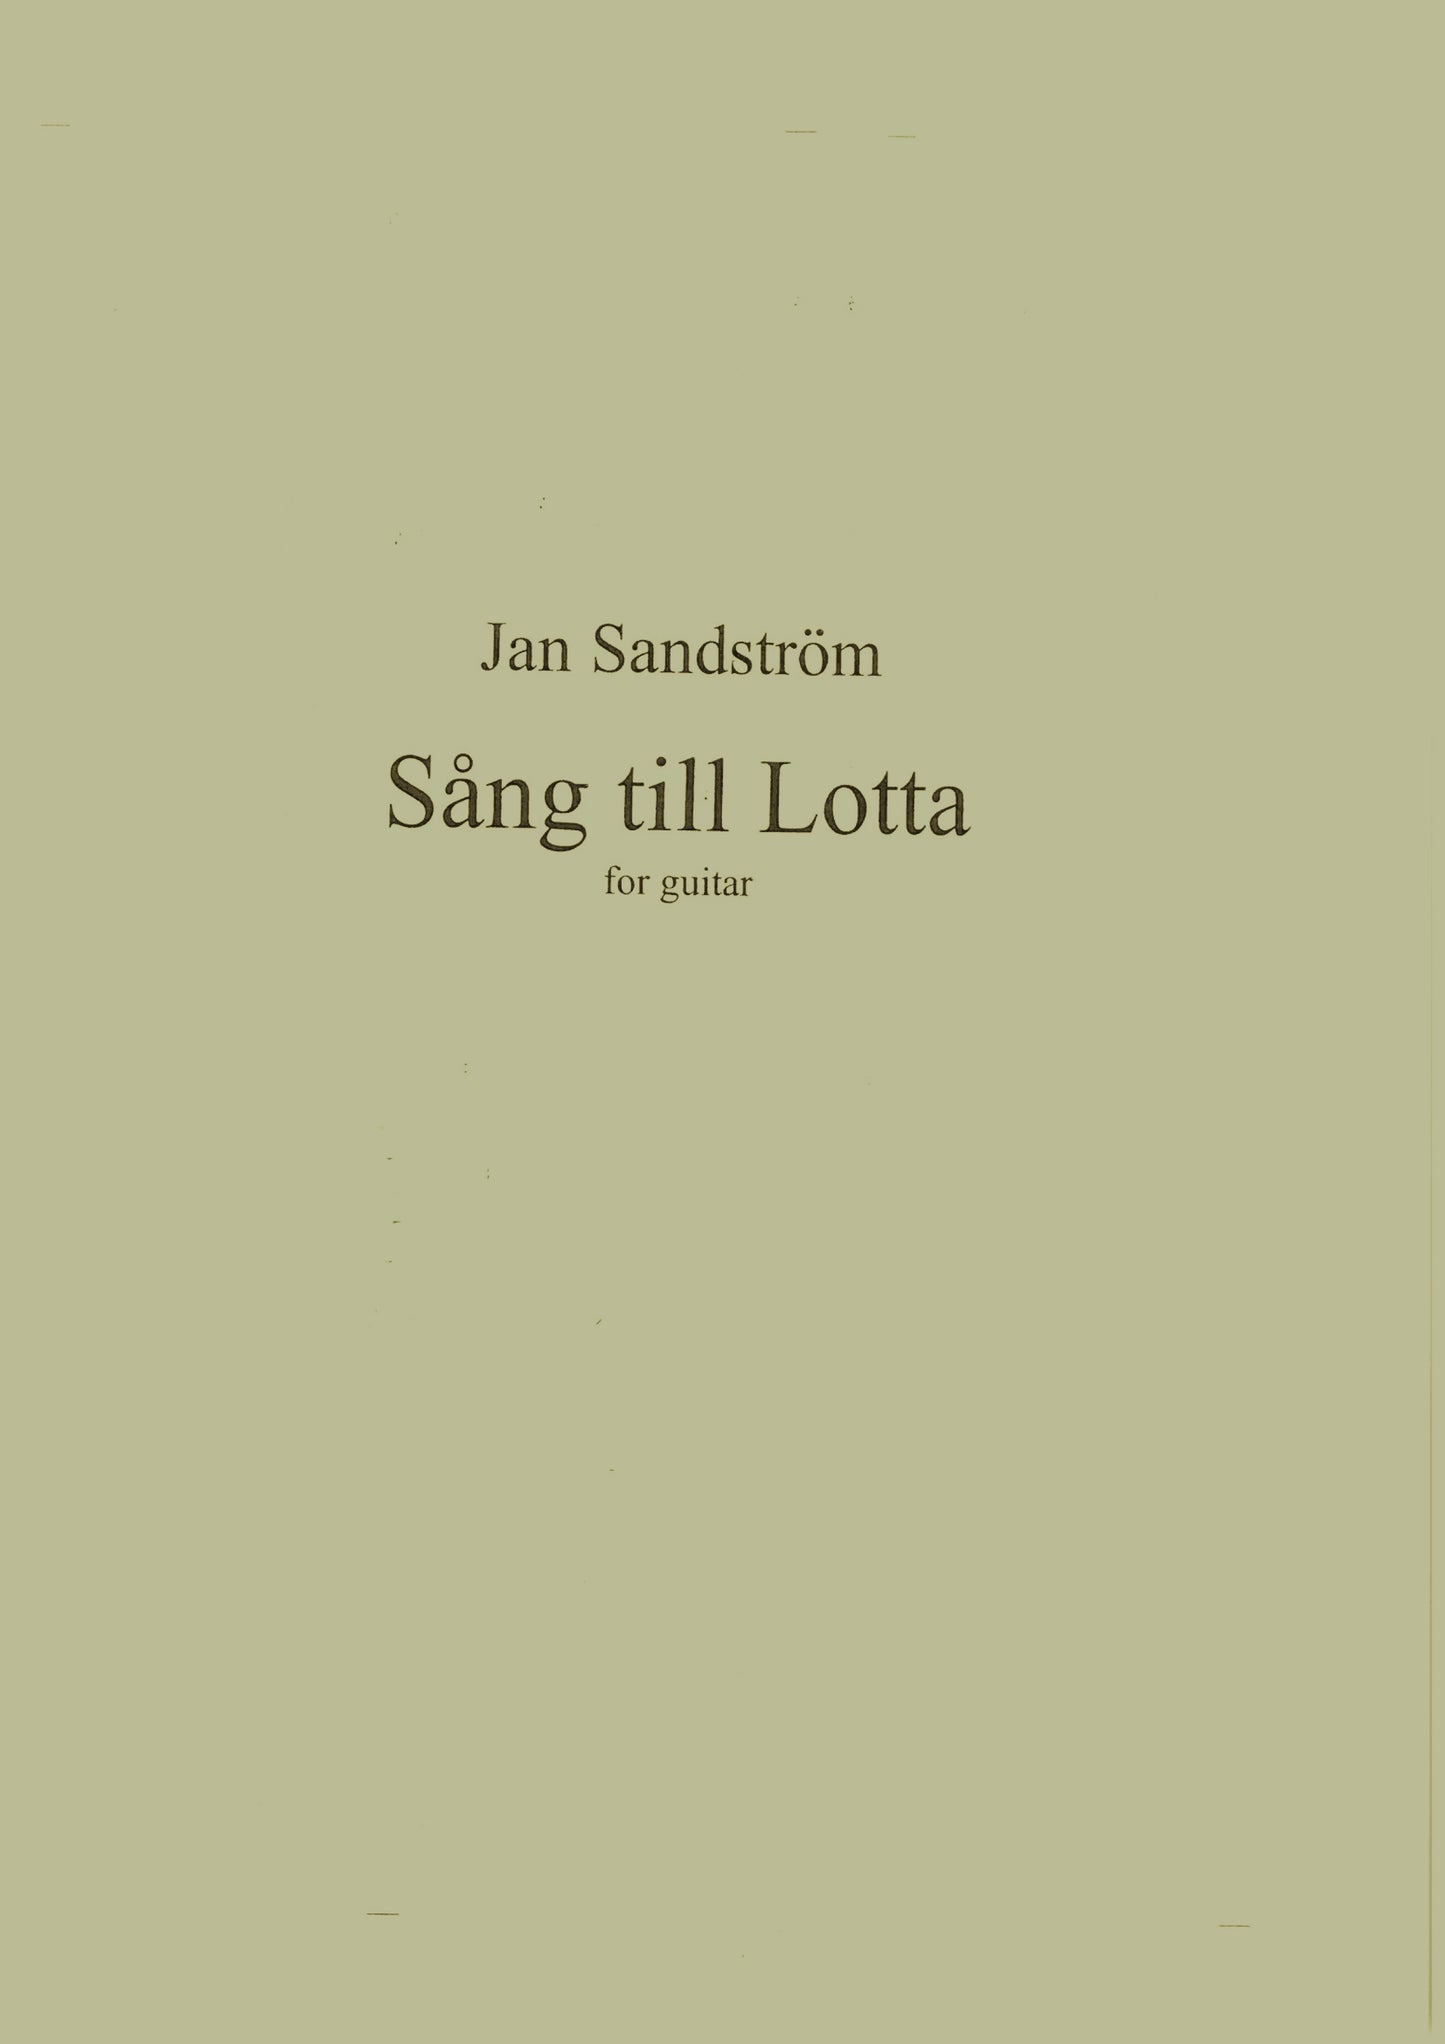 Jan Sandström - Song to Lotta for Guitar